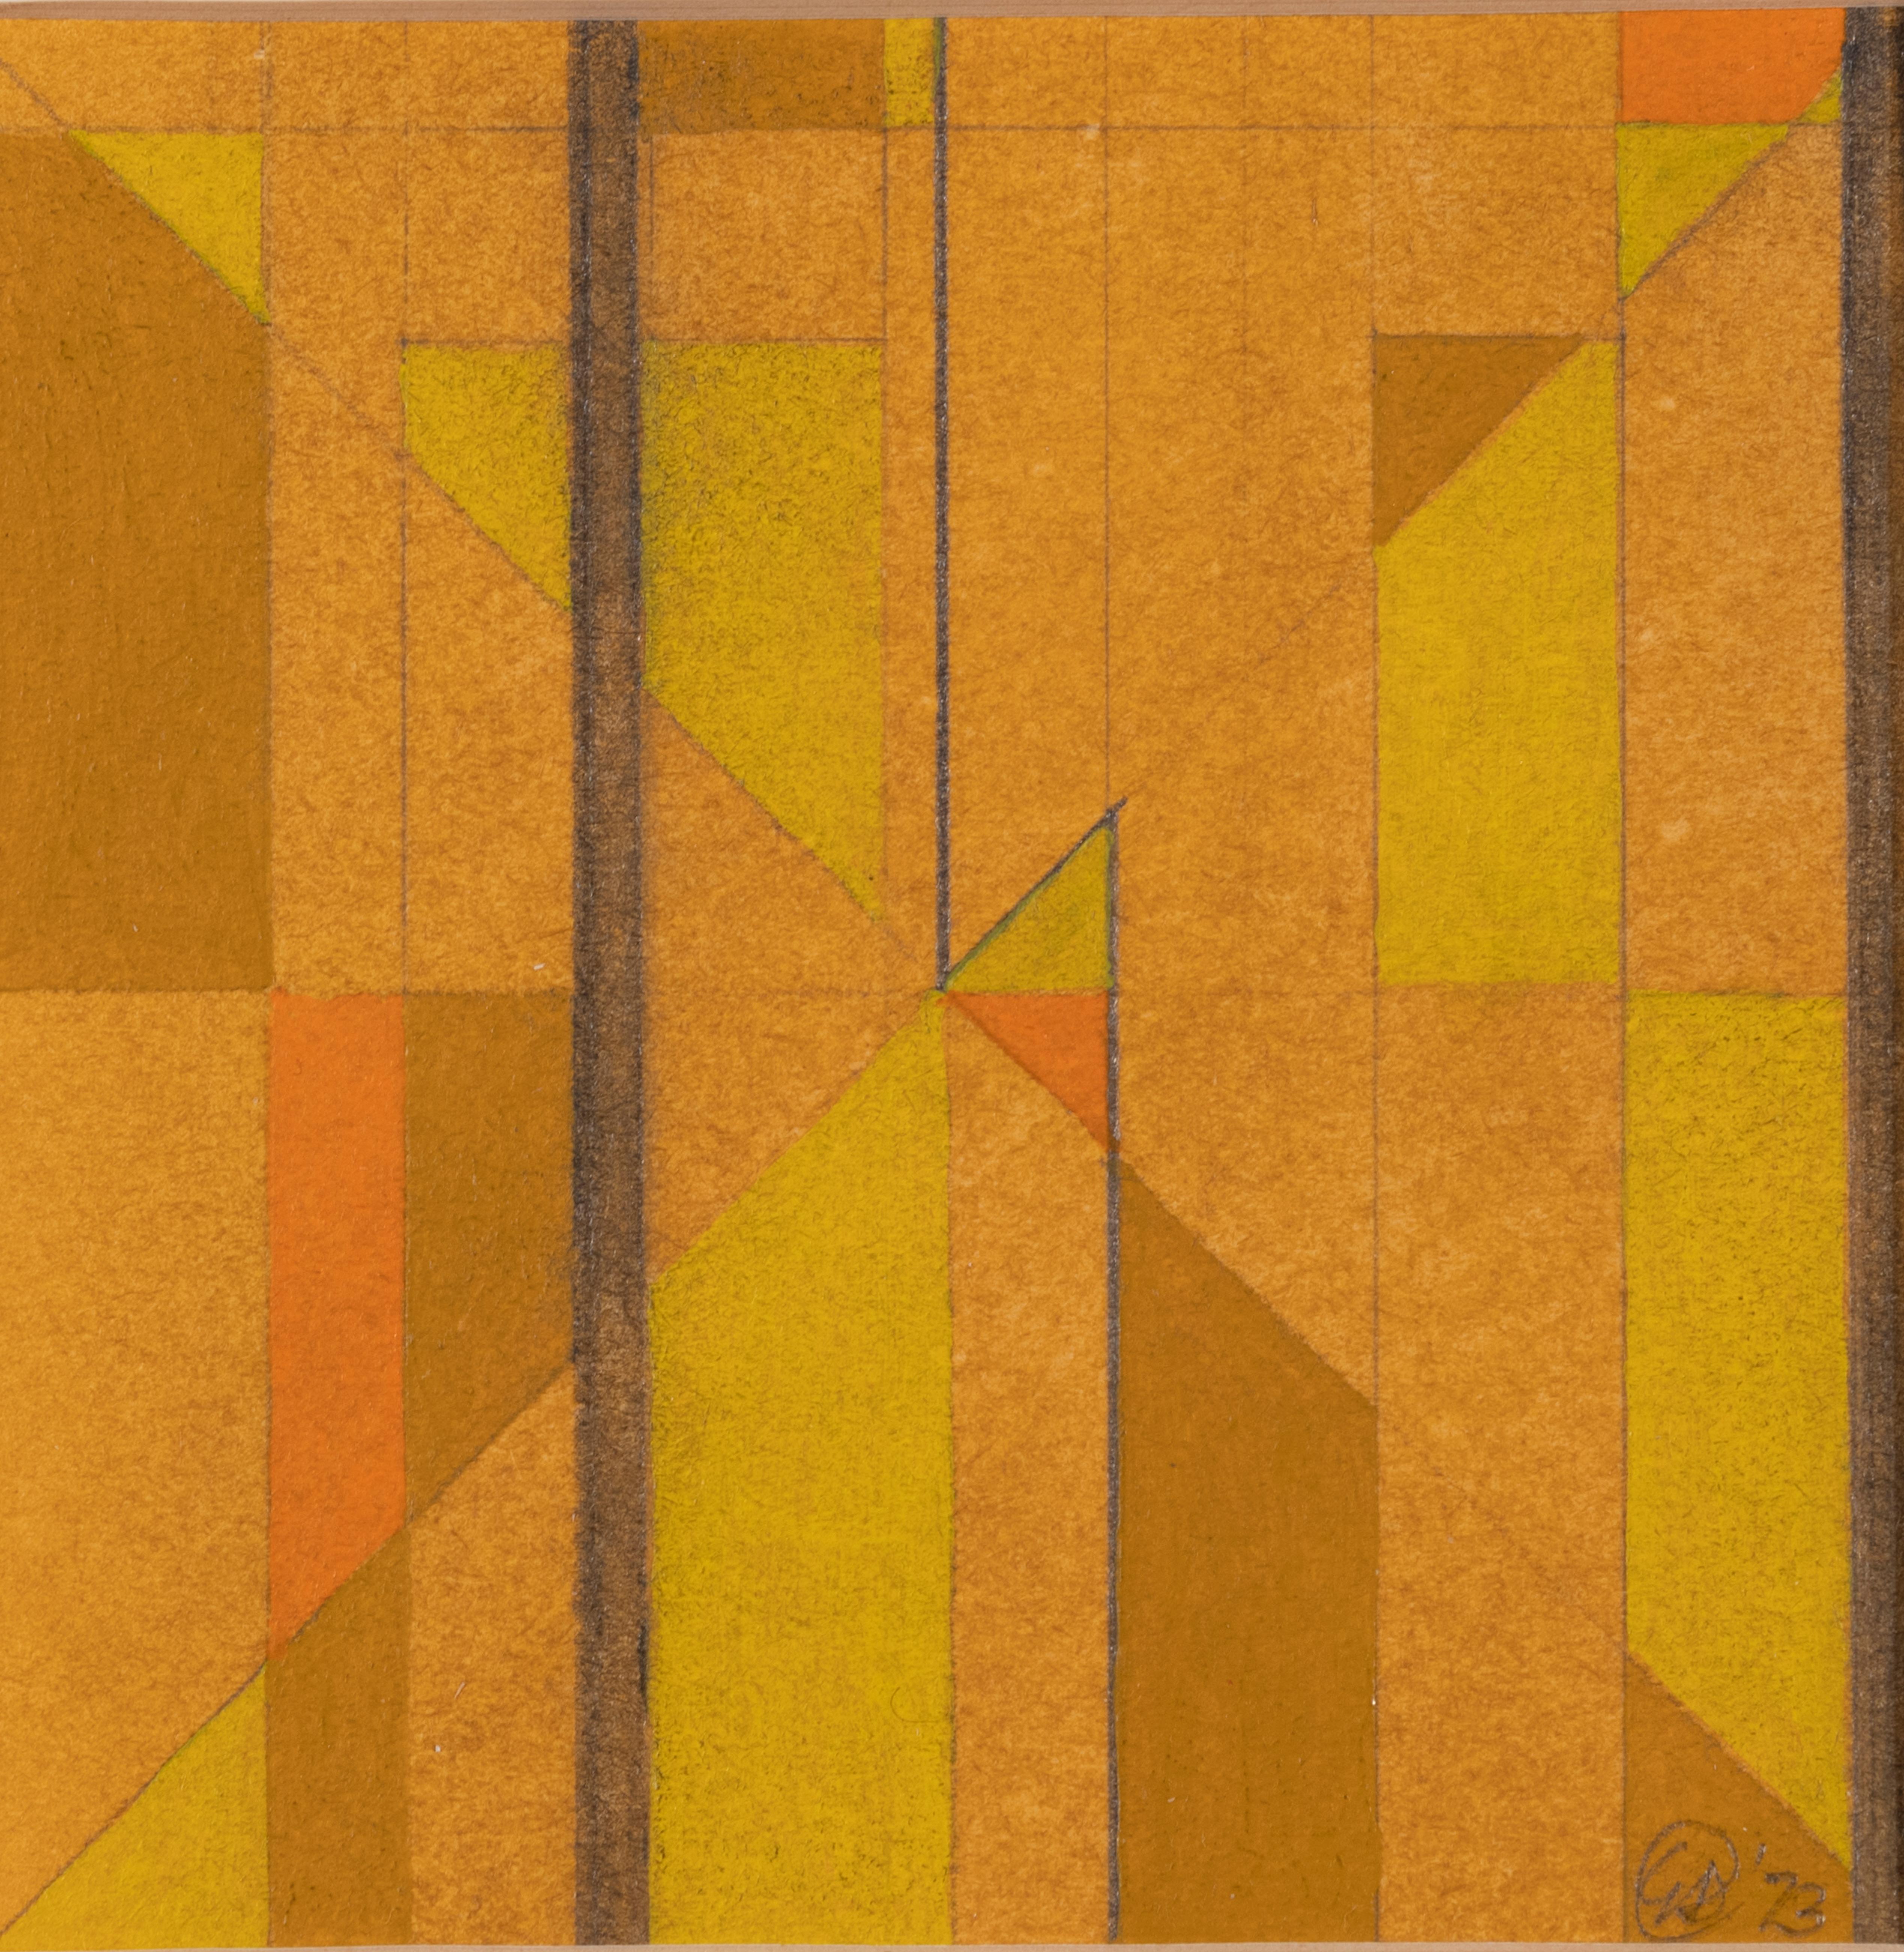 Artistics : George Dannatt
Titre : Variations sur les verticales n° 2
Numéro de référence : 0320/2
Date : 1973
Médium : Huile sur papier et crayon sur papier
Image : 4 x 4